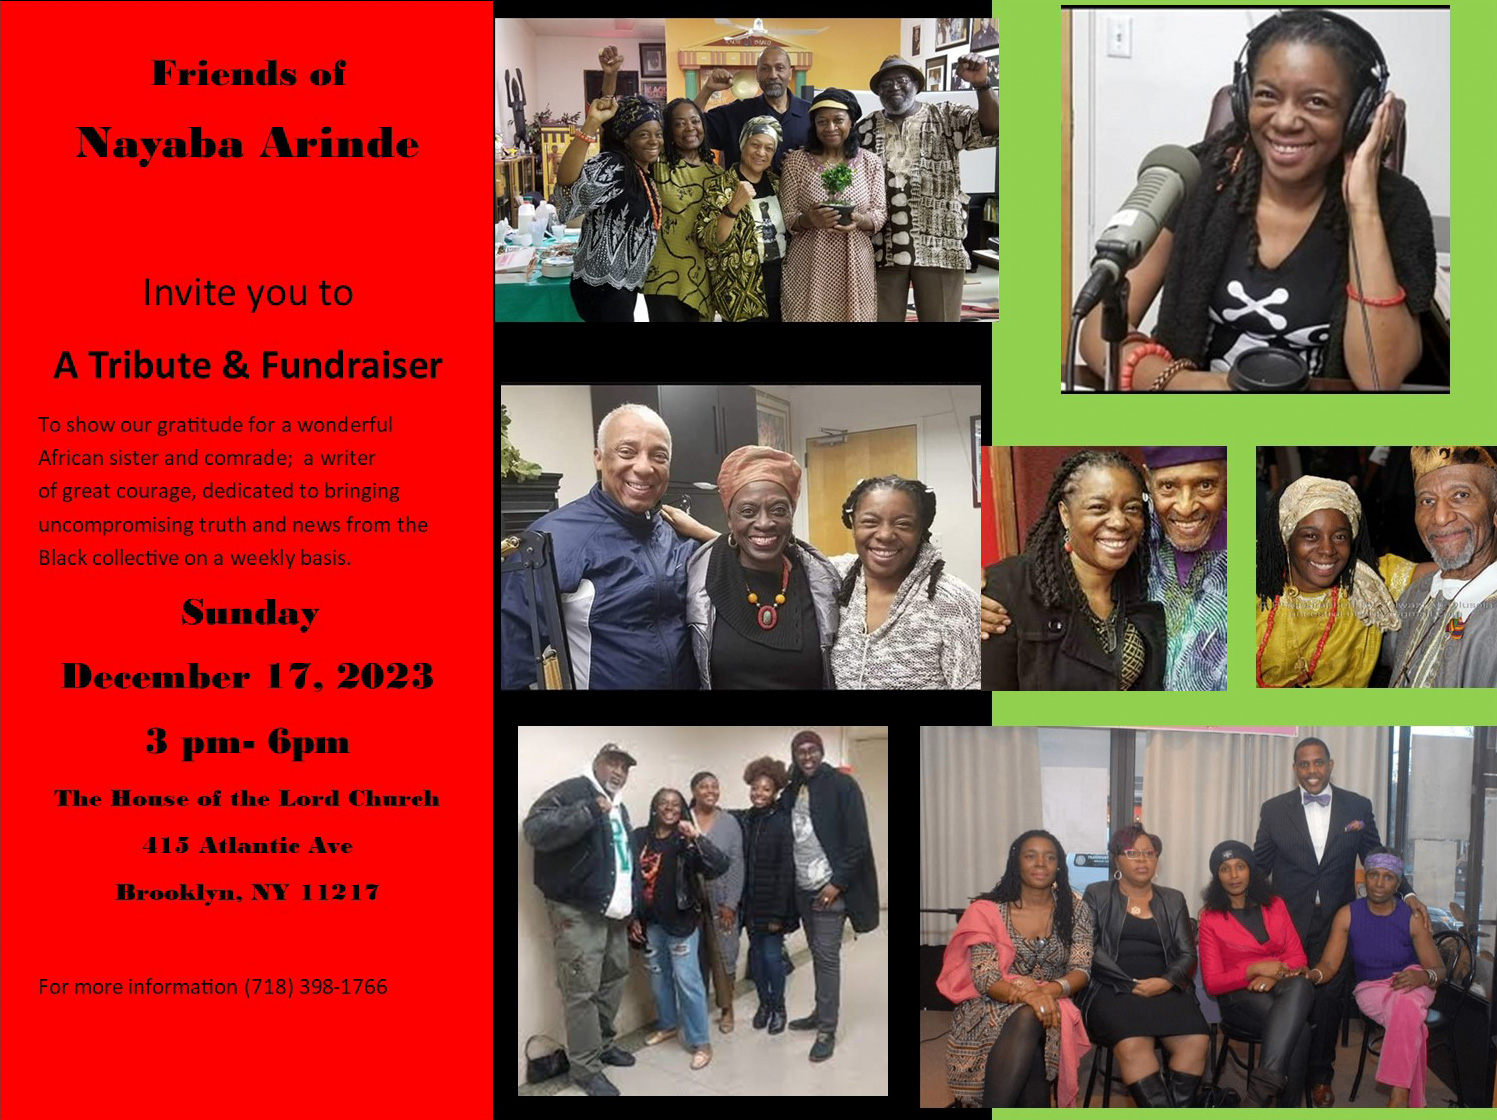 Tribute & Fundraiser for Nayaba Arinde